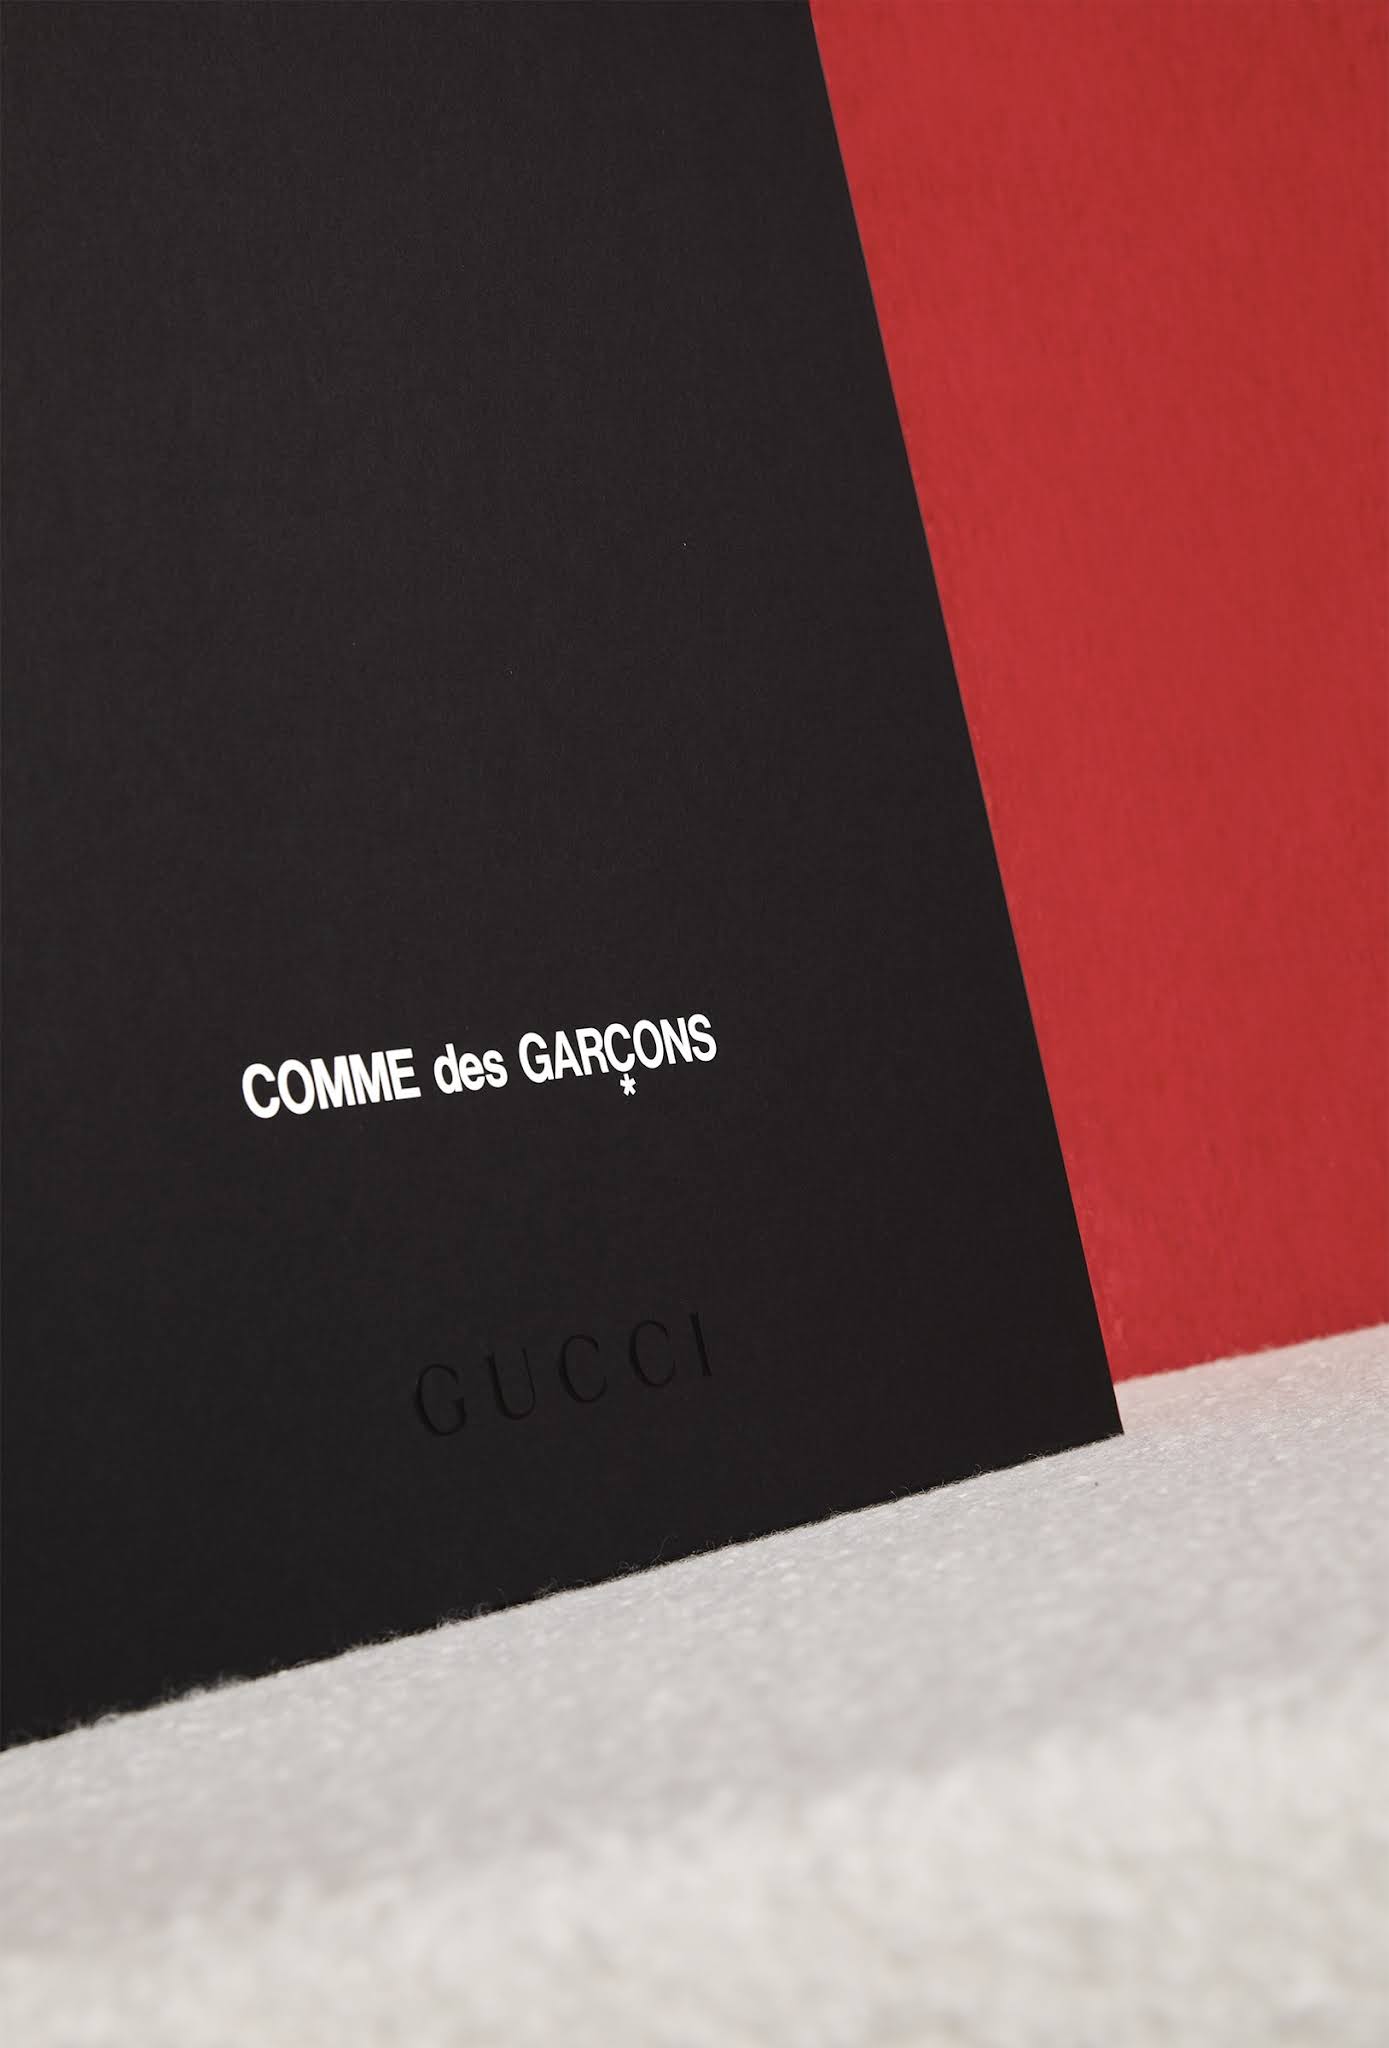 GUCCI x COMME des GARÇONS Shopper launches Friday, October 15th at COMME des GARÇONS